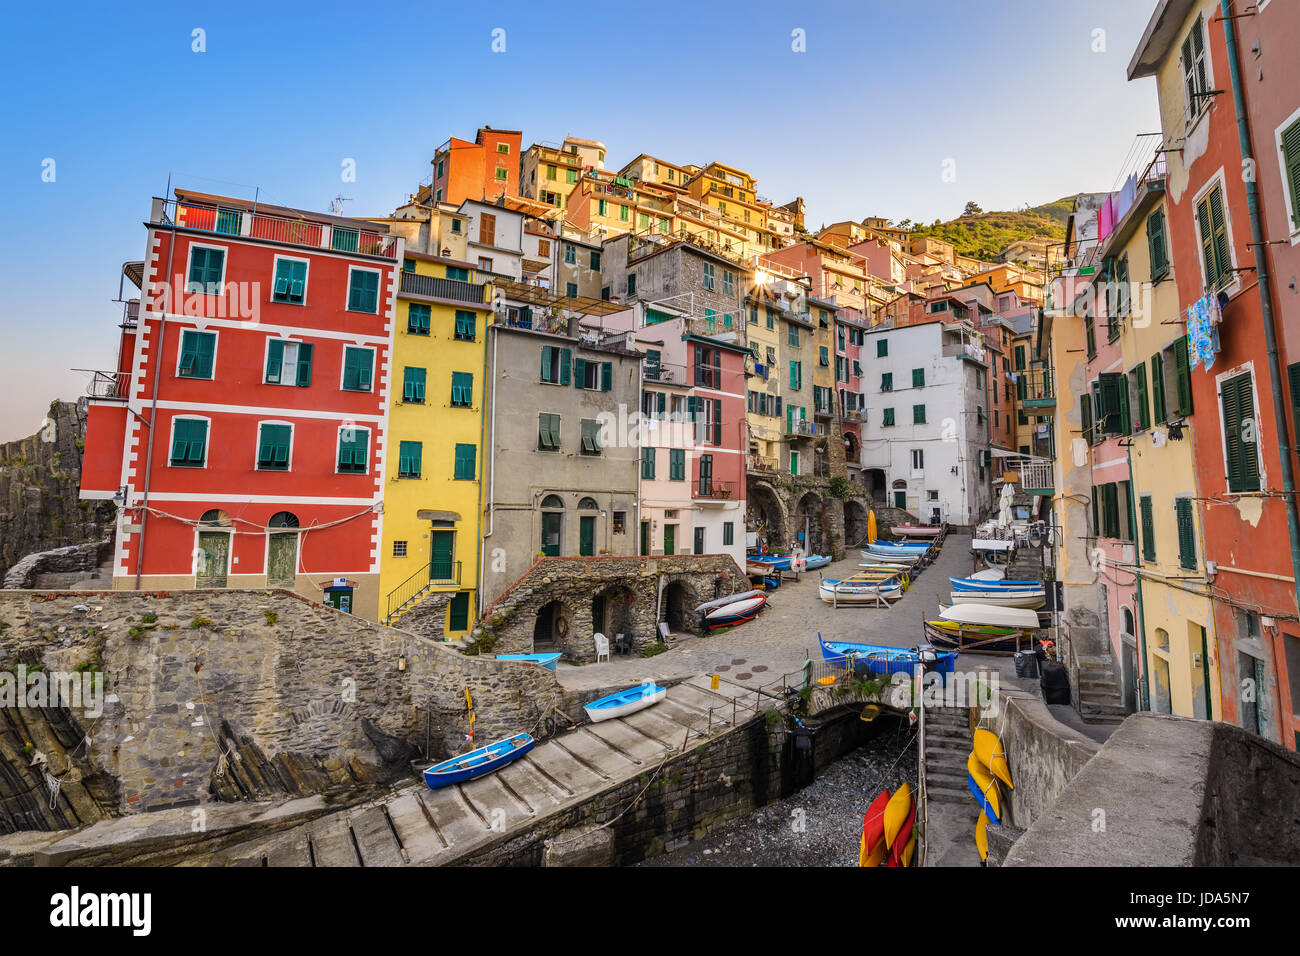 Italy Riviera at Colorful Riomaggiore village, Cinque Terre, Italy Stock Photo